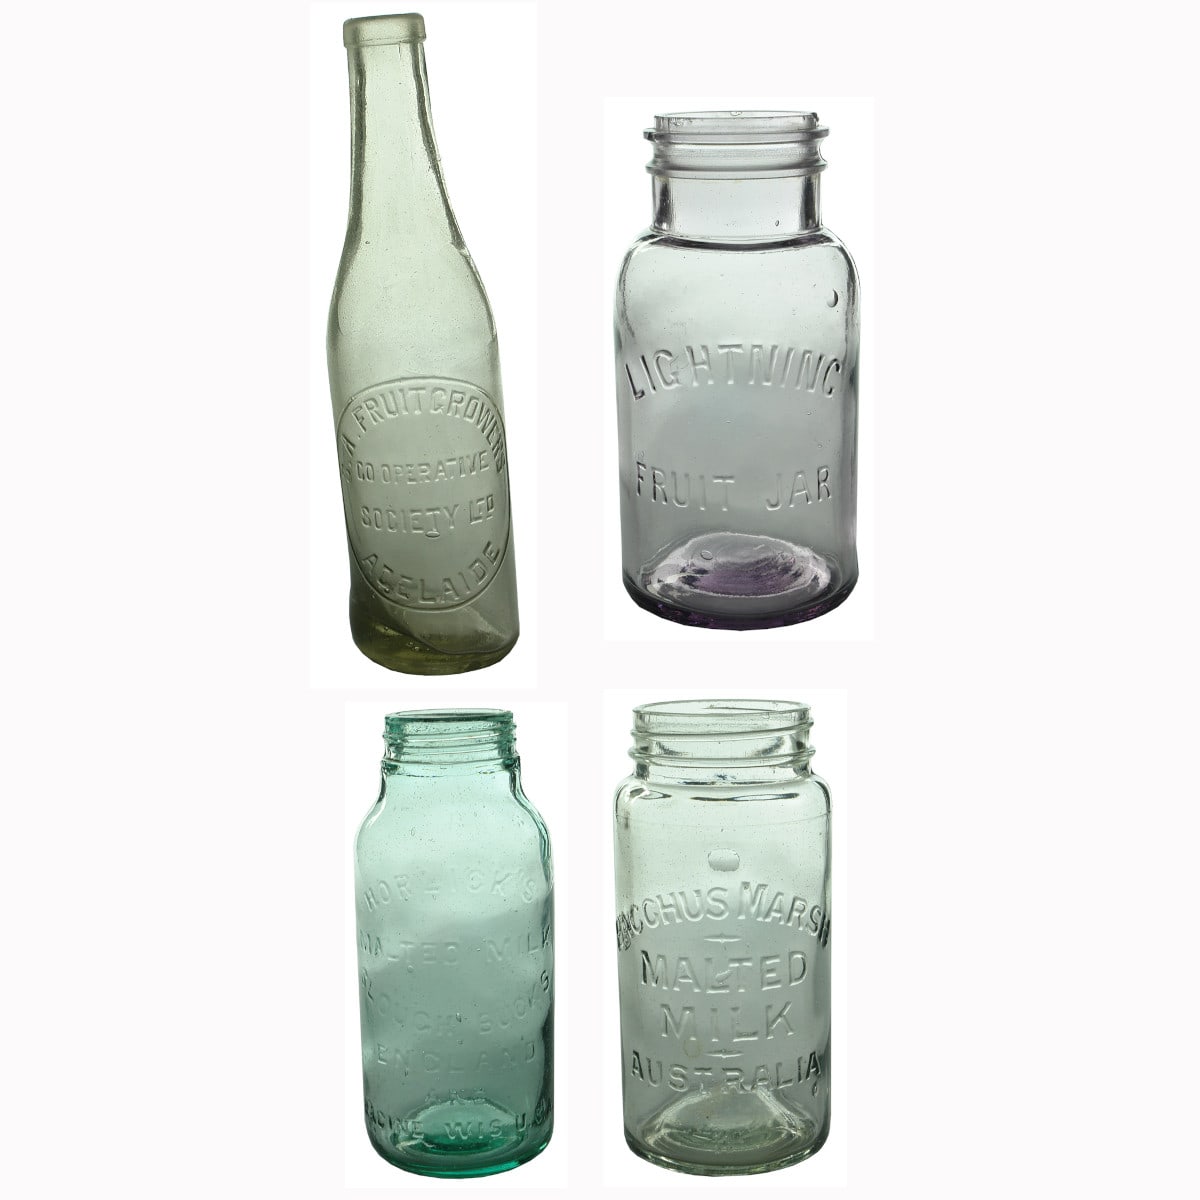 Four Household Bottles/Jars: Lightning Fruit Jar; SA Fruitgrowers Sauce; Horlicks Malted Milk; Bacchus Marsh Malted Milk.